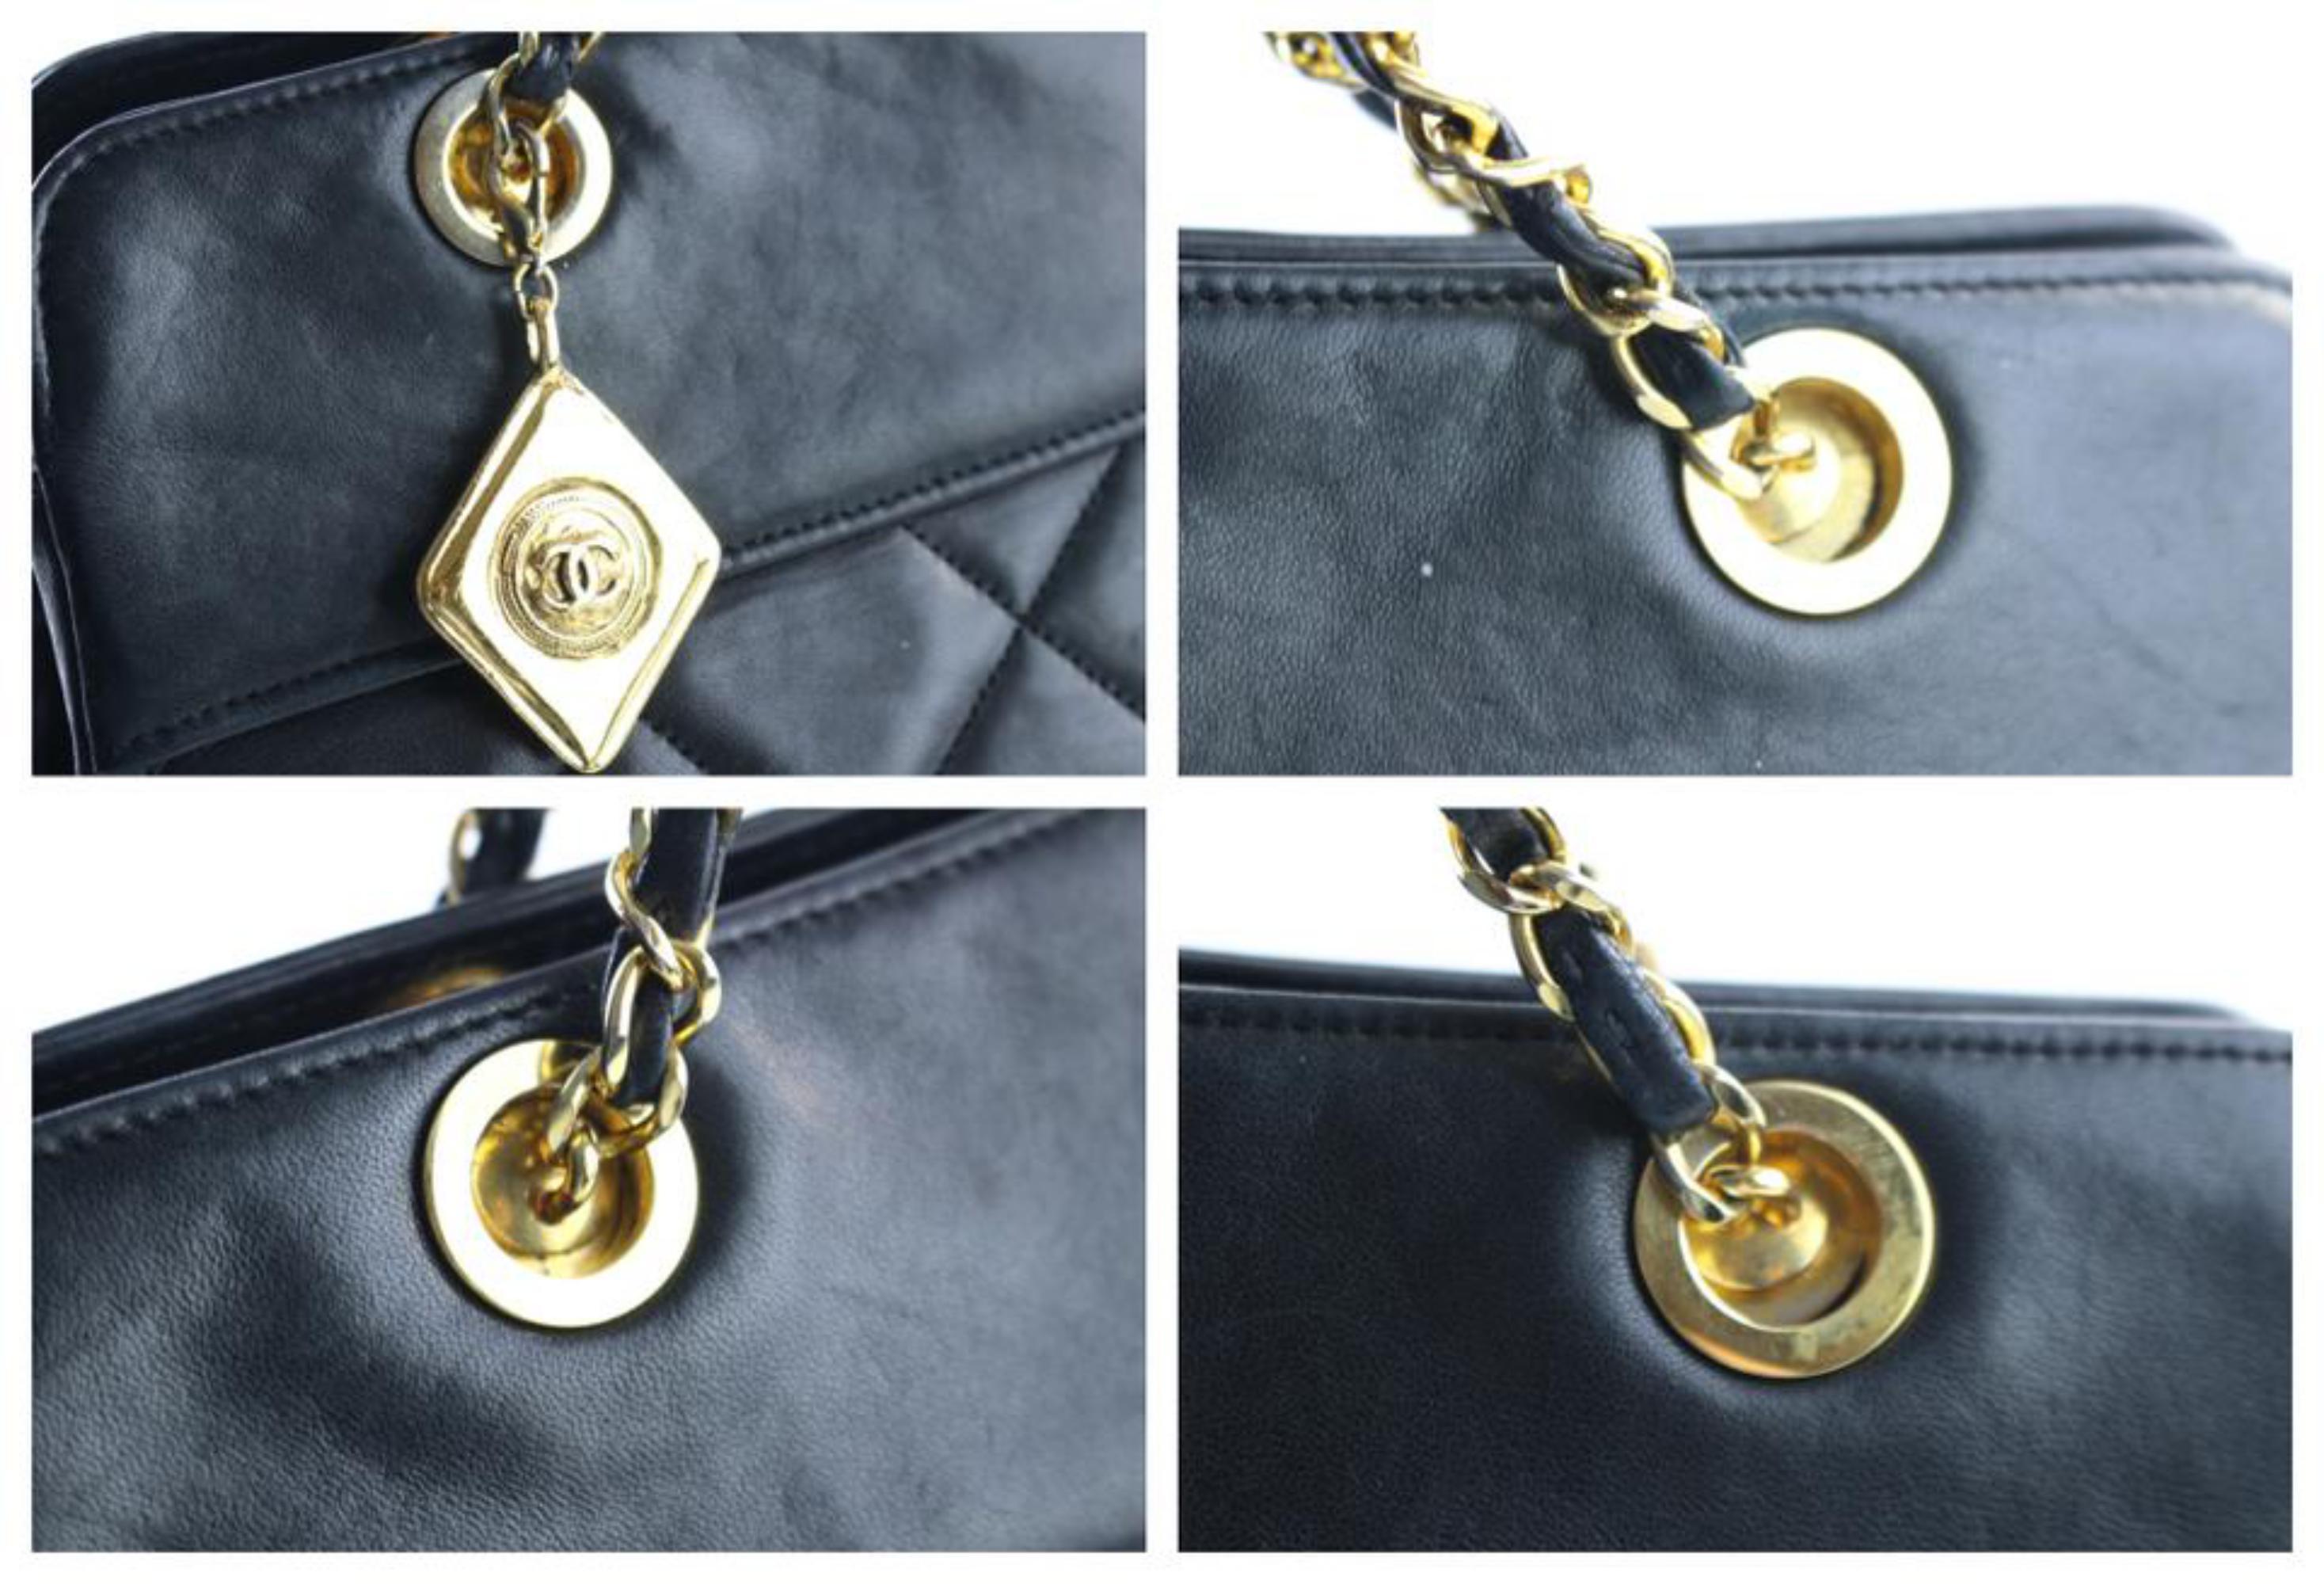 Chanel Medallion Chain Tote 14cr0515 Black Leather Shoulder Bag For Sale 4